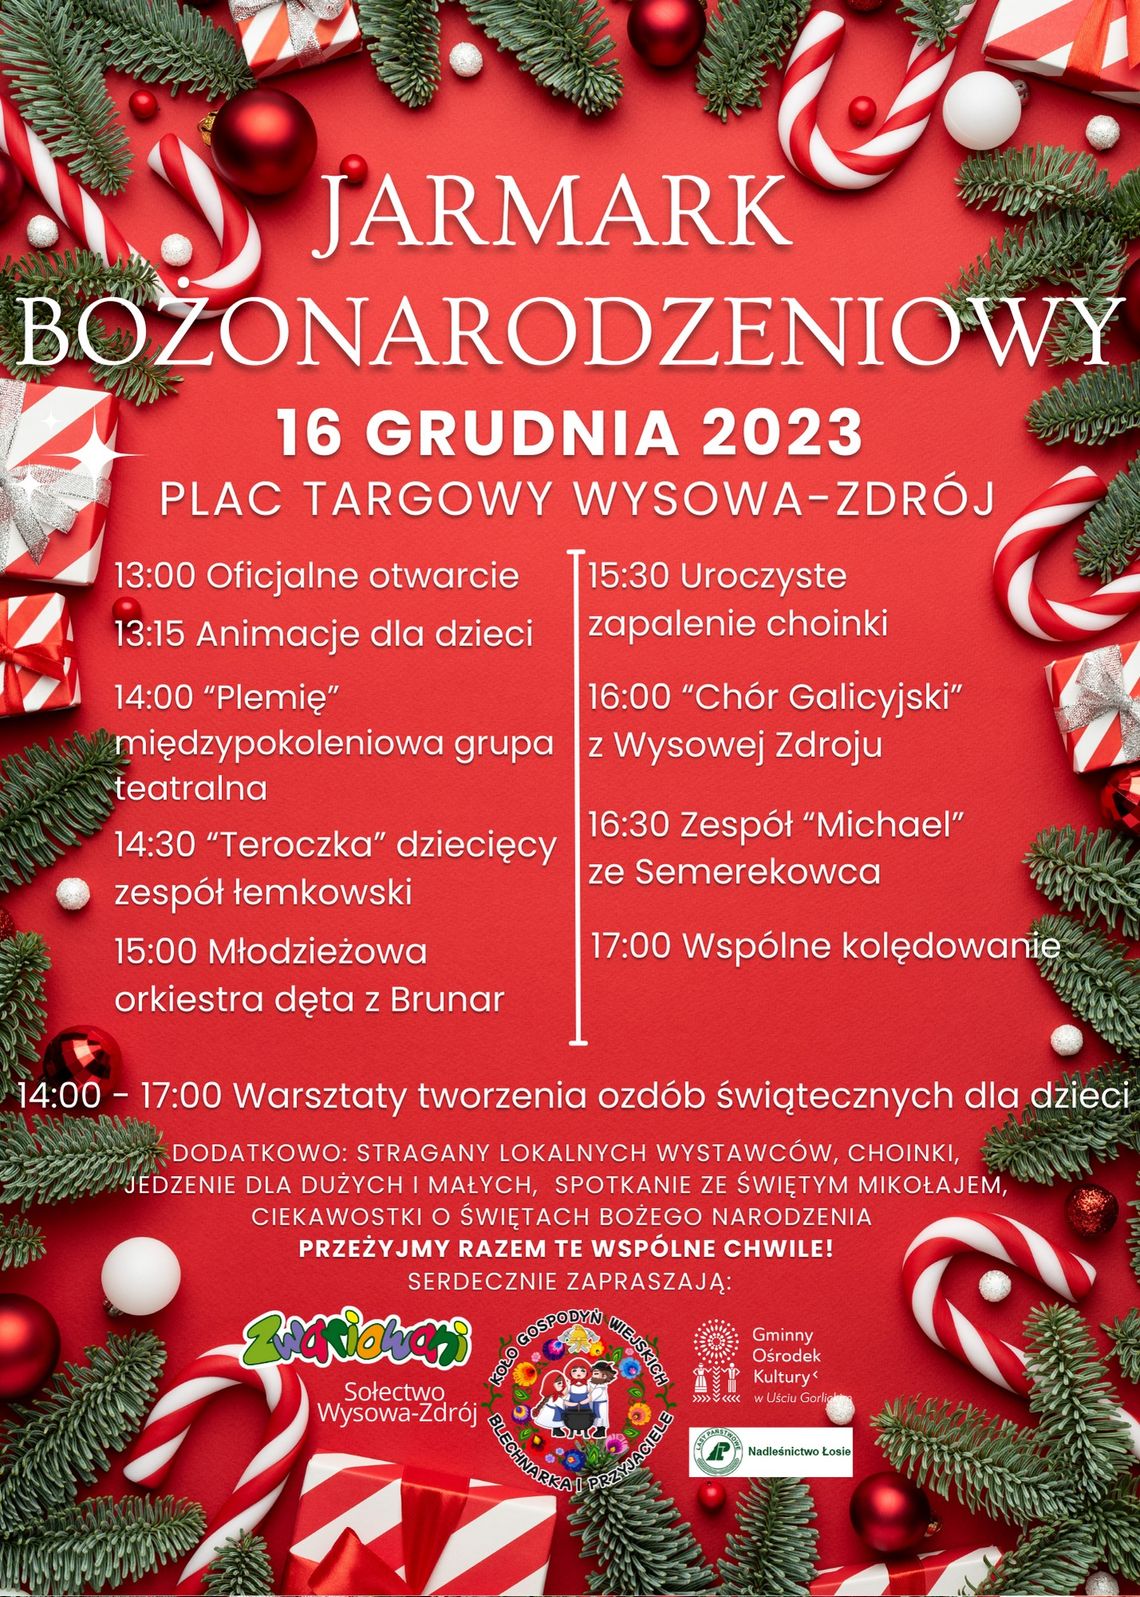 Jarmark Bożonarodzeniowy Wysowa – Zdrój | halogorlice.info